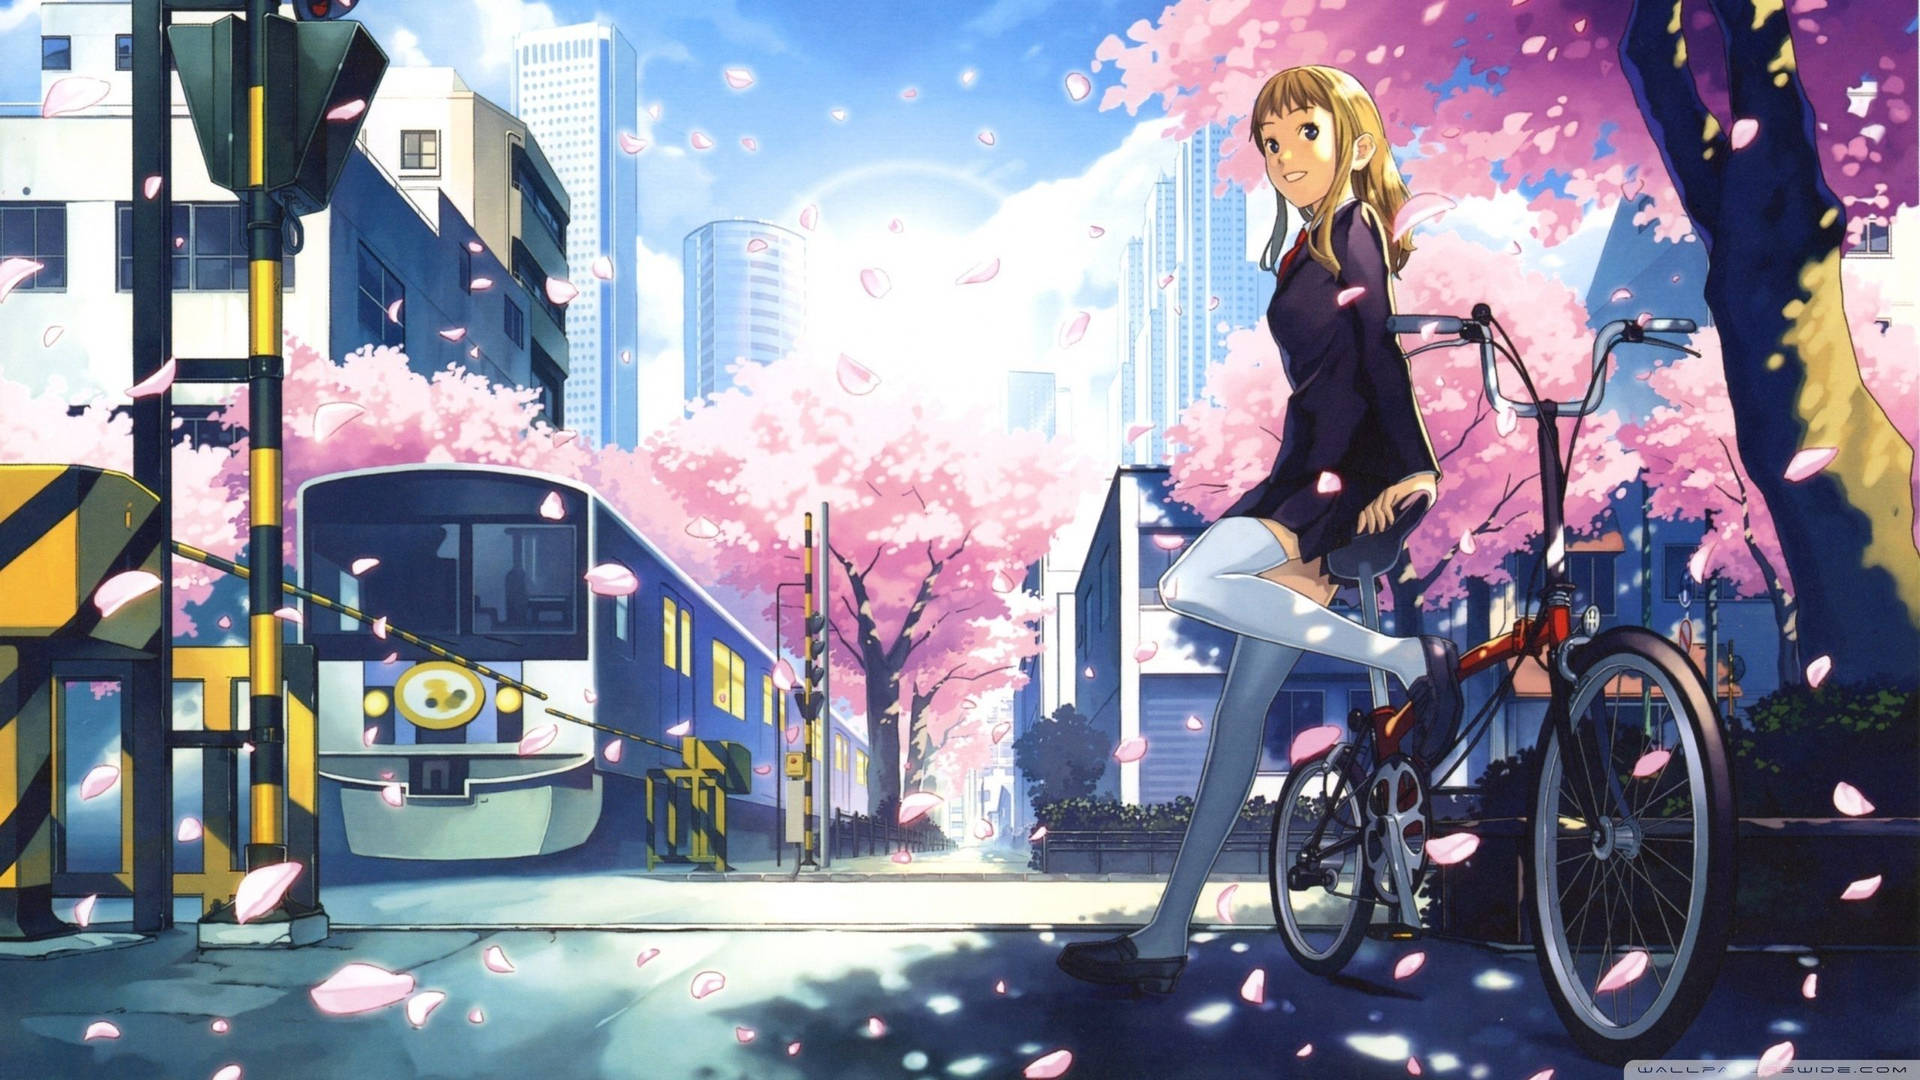 A Girl Biking Through the City of Anime Dreams Wallpaper